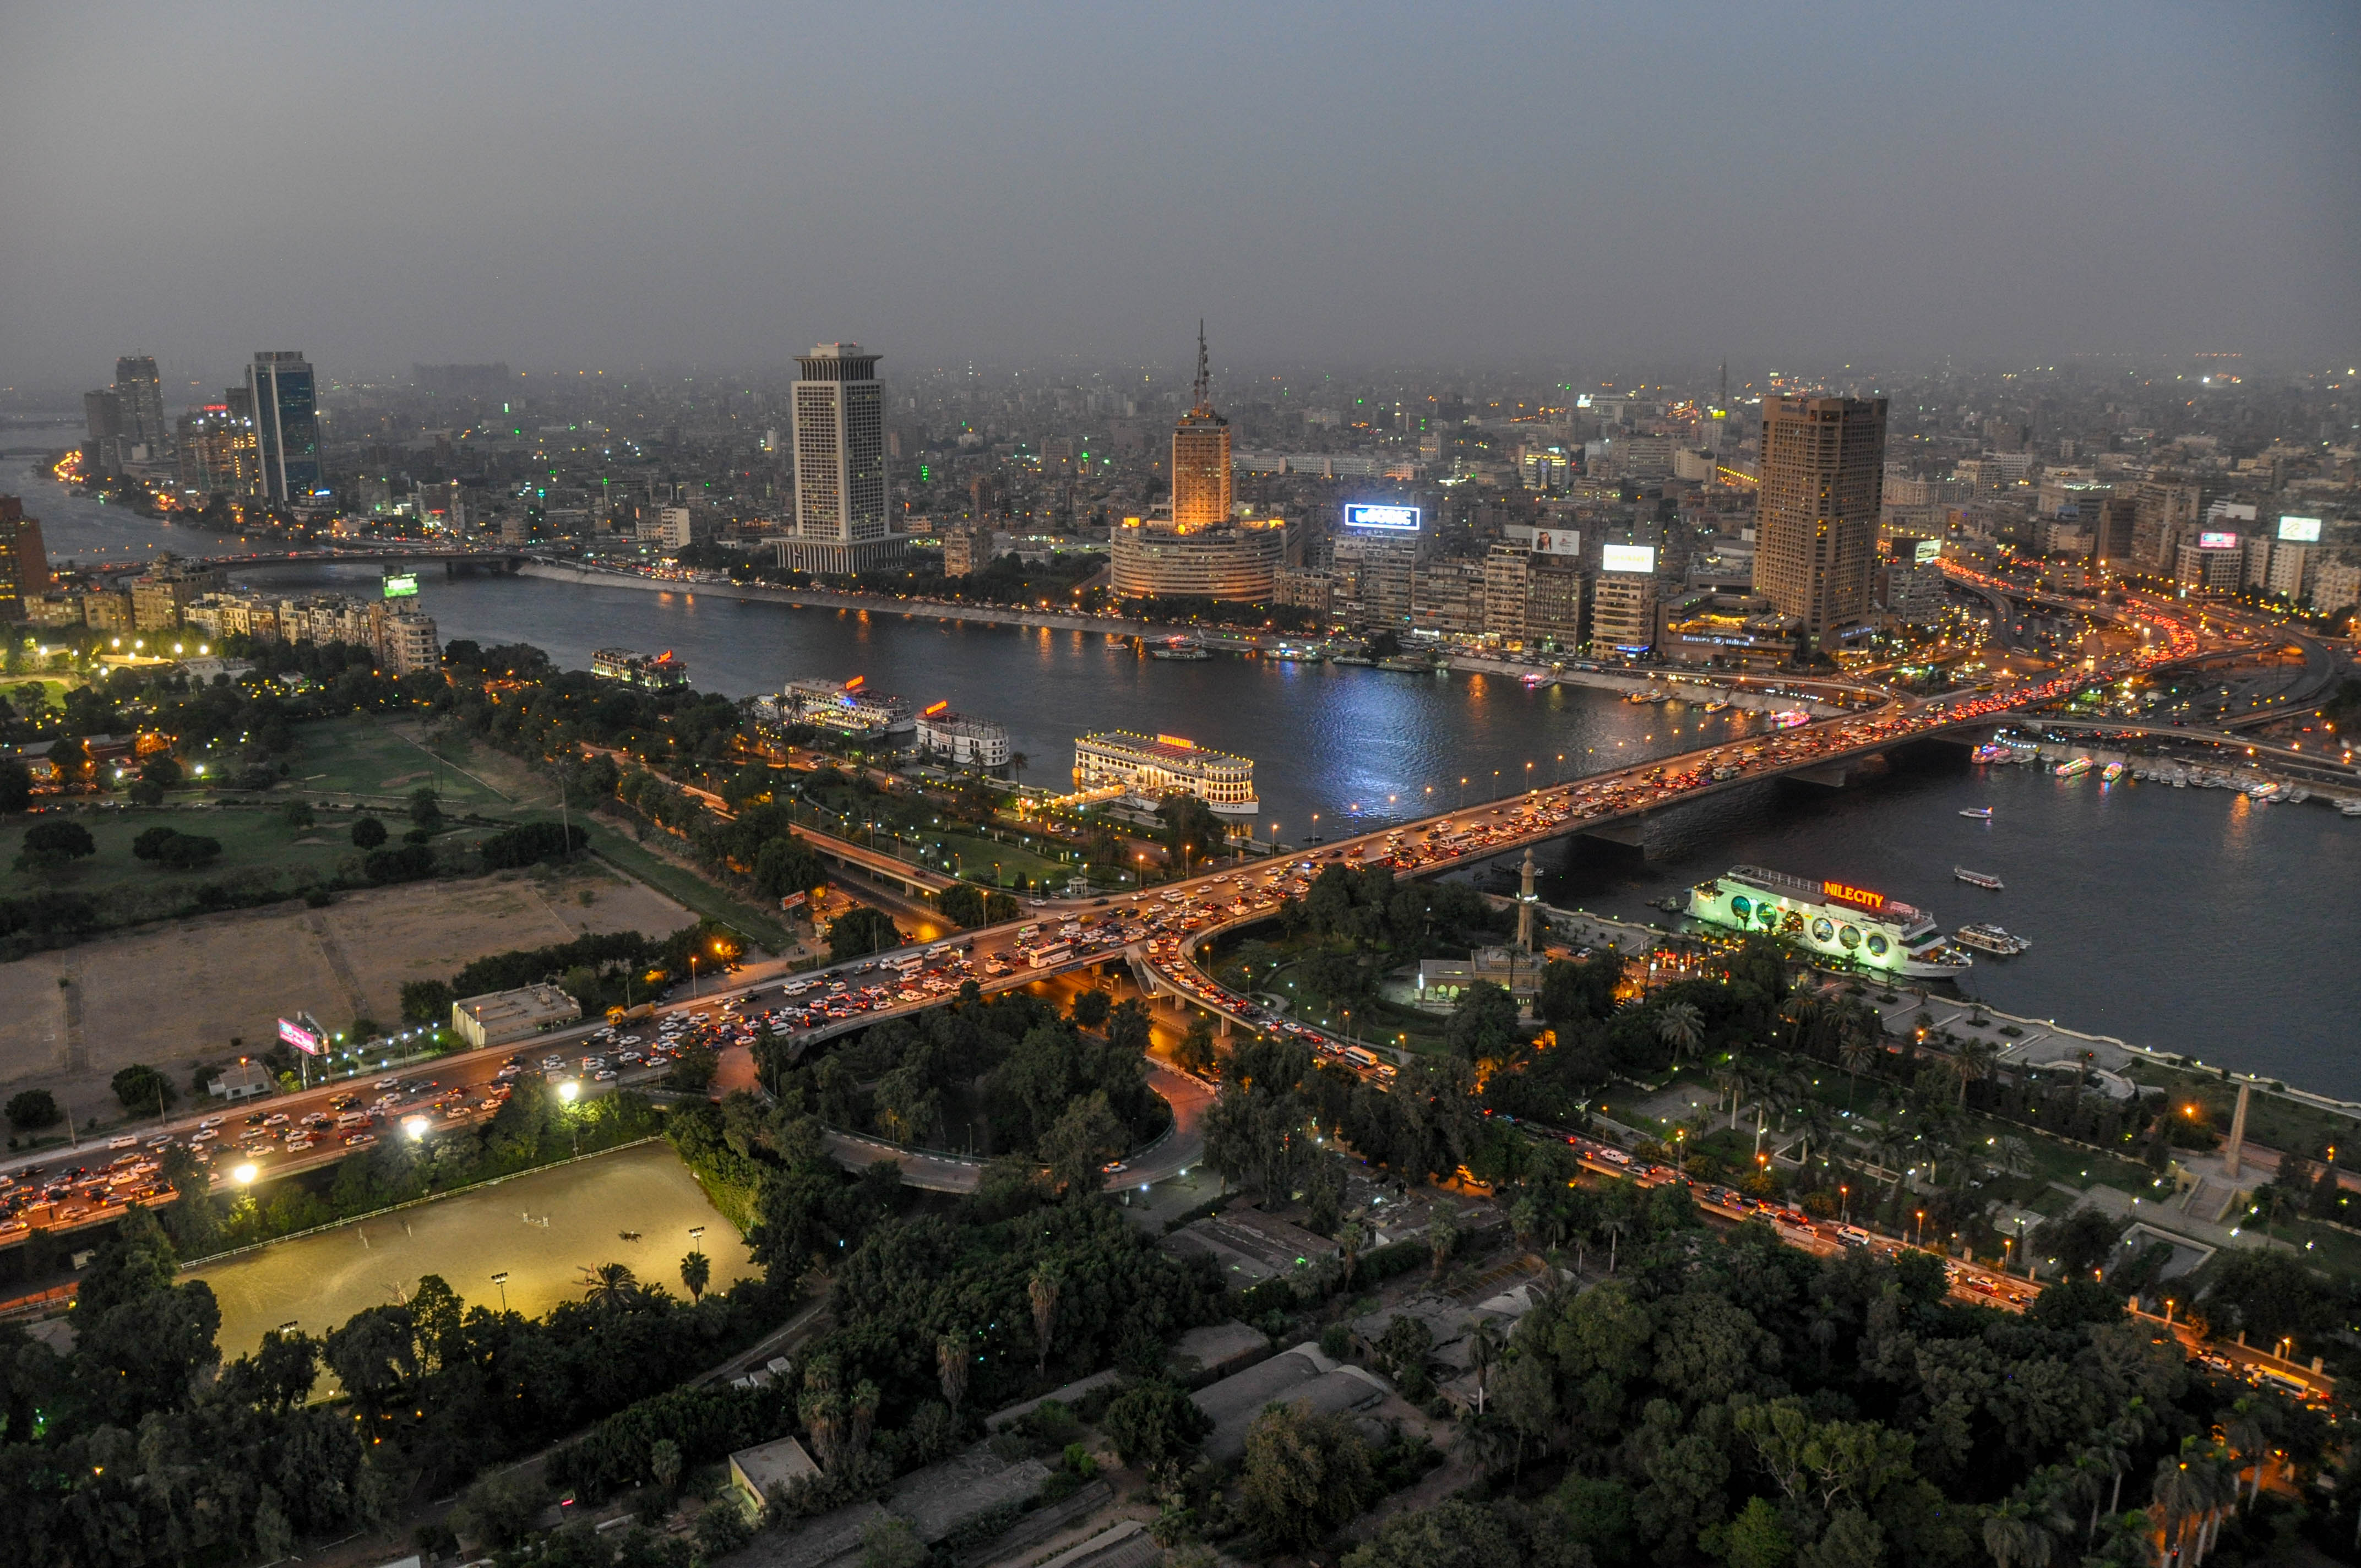 Каир центр города